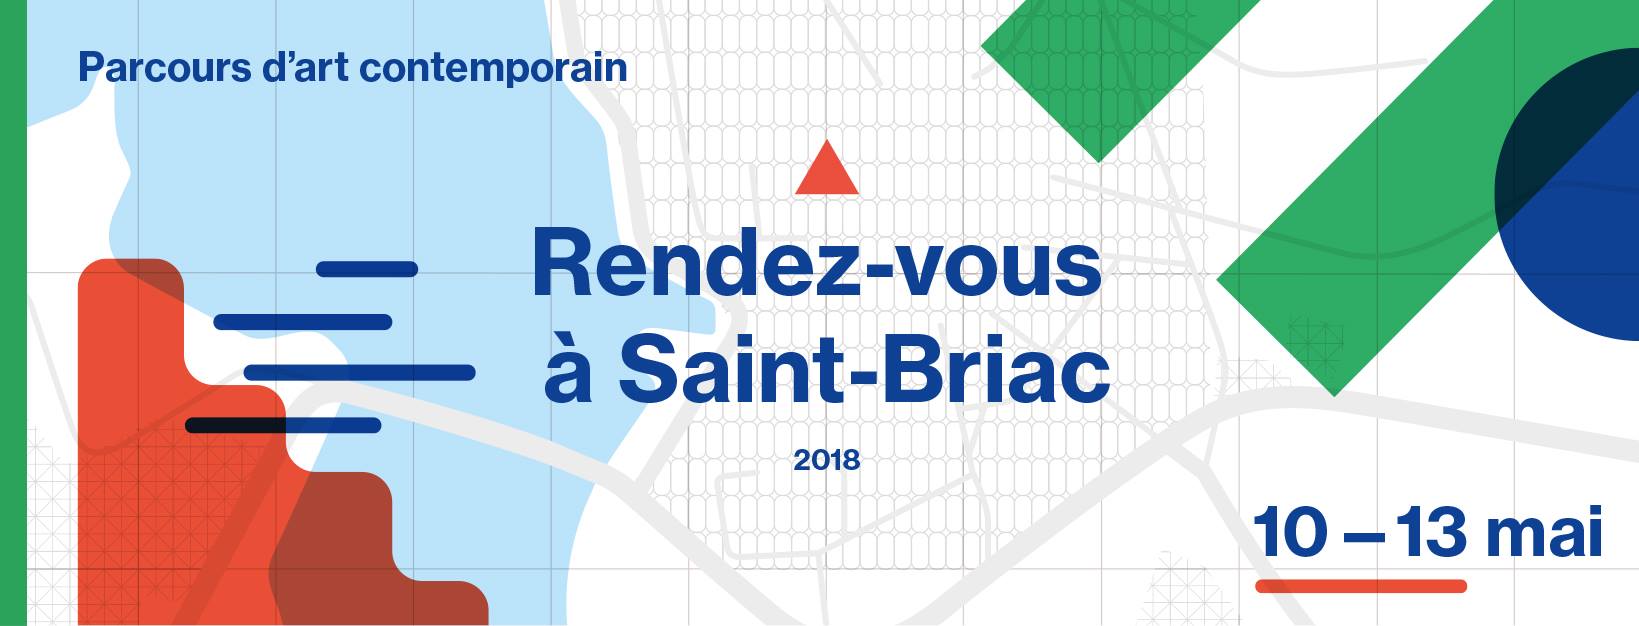 Rendez-vous à Saint-Briac